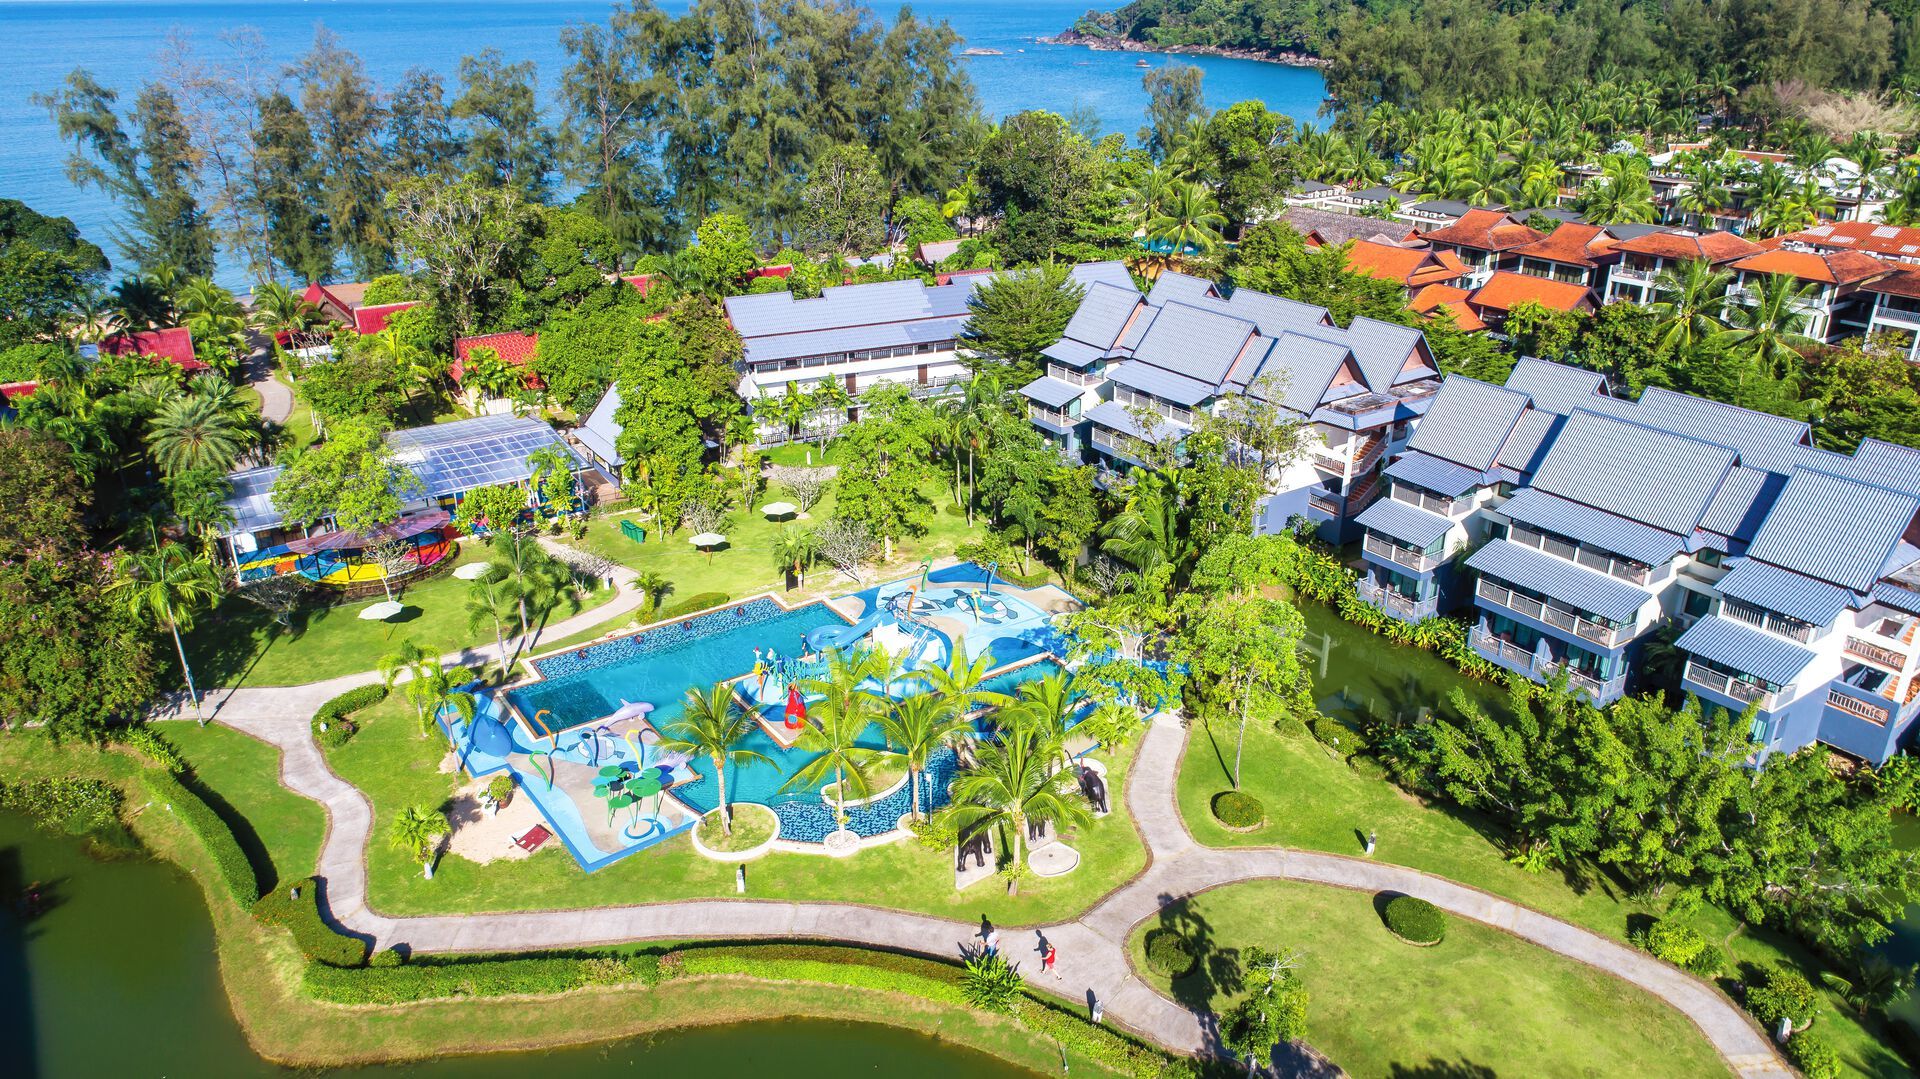 Thaïlande - Khao Lak - Hôtel Khaolak Emerald Beach Resort & Spa 4*